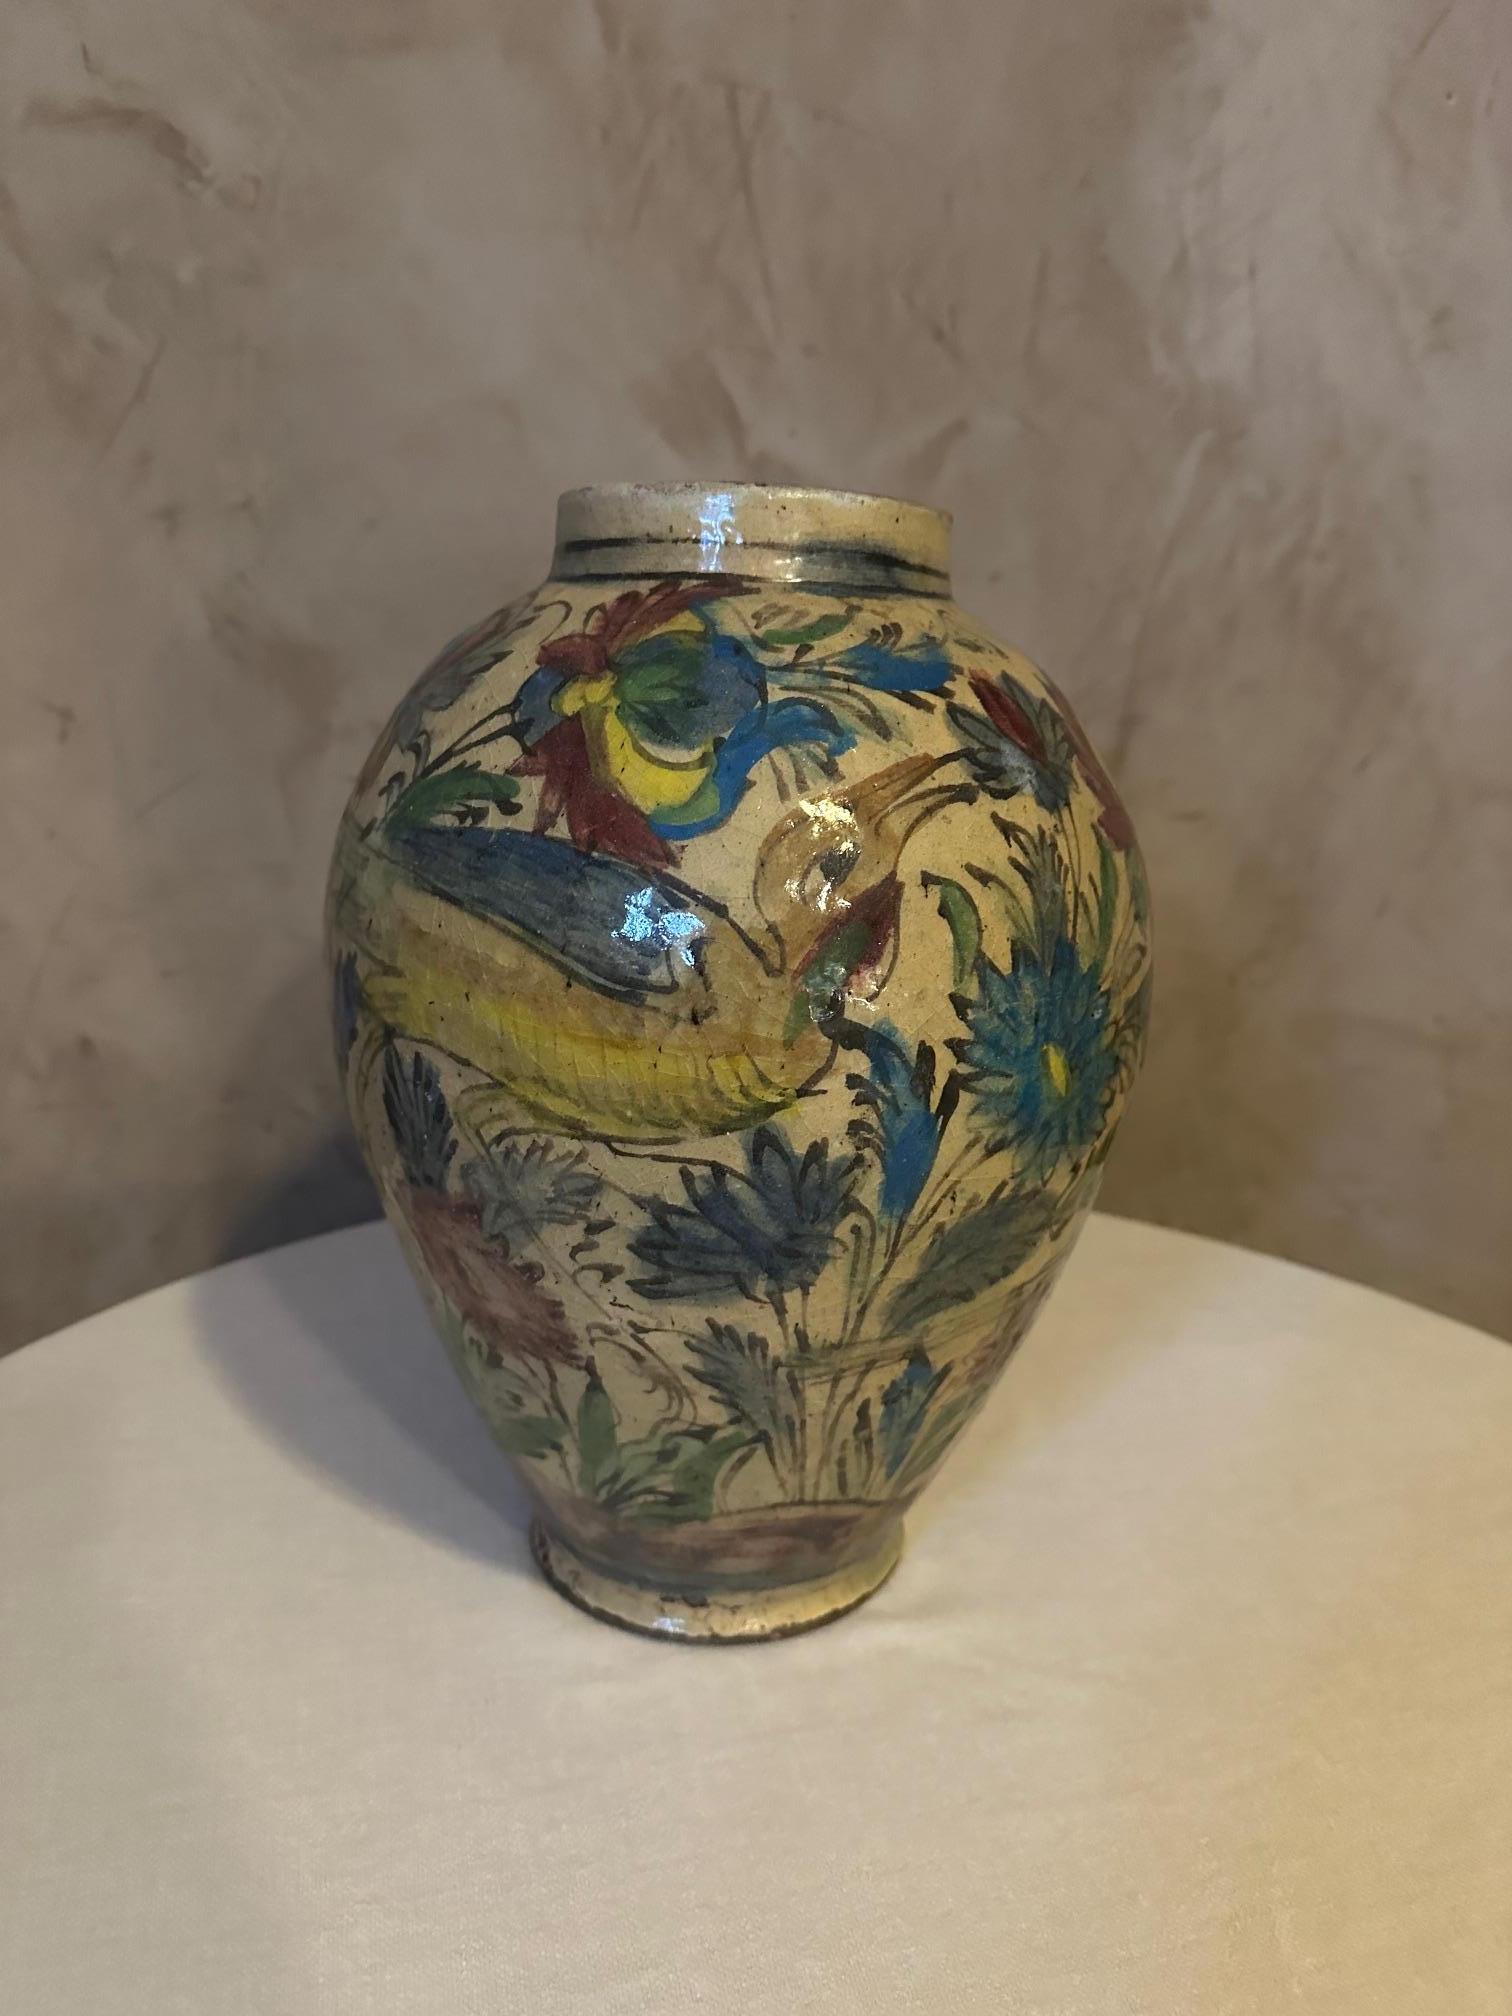 Sehr schöne Vase aus emaillierter, polychrom bemalter Keramik. 
Persisch, Qajar-Dynastie aus dem Jahr 1900. 
Schöne gemalte Dekoration mit Vögeln und blühenden Zweigen. 
Gute Qualität. Kleiner Chip unterhalb des Fußes.
